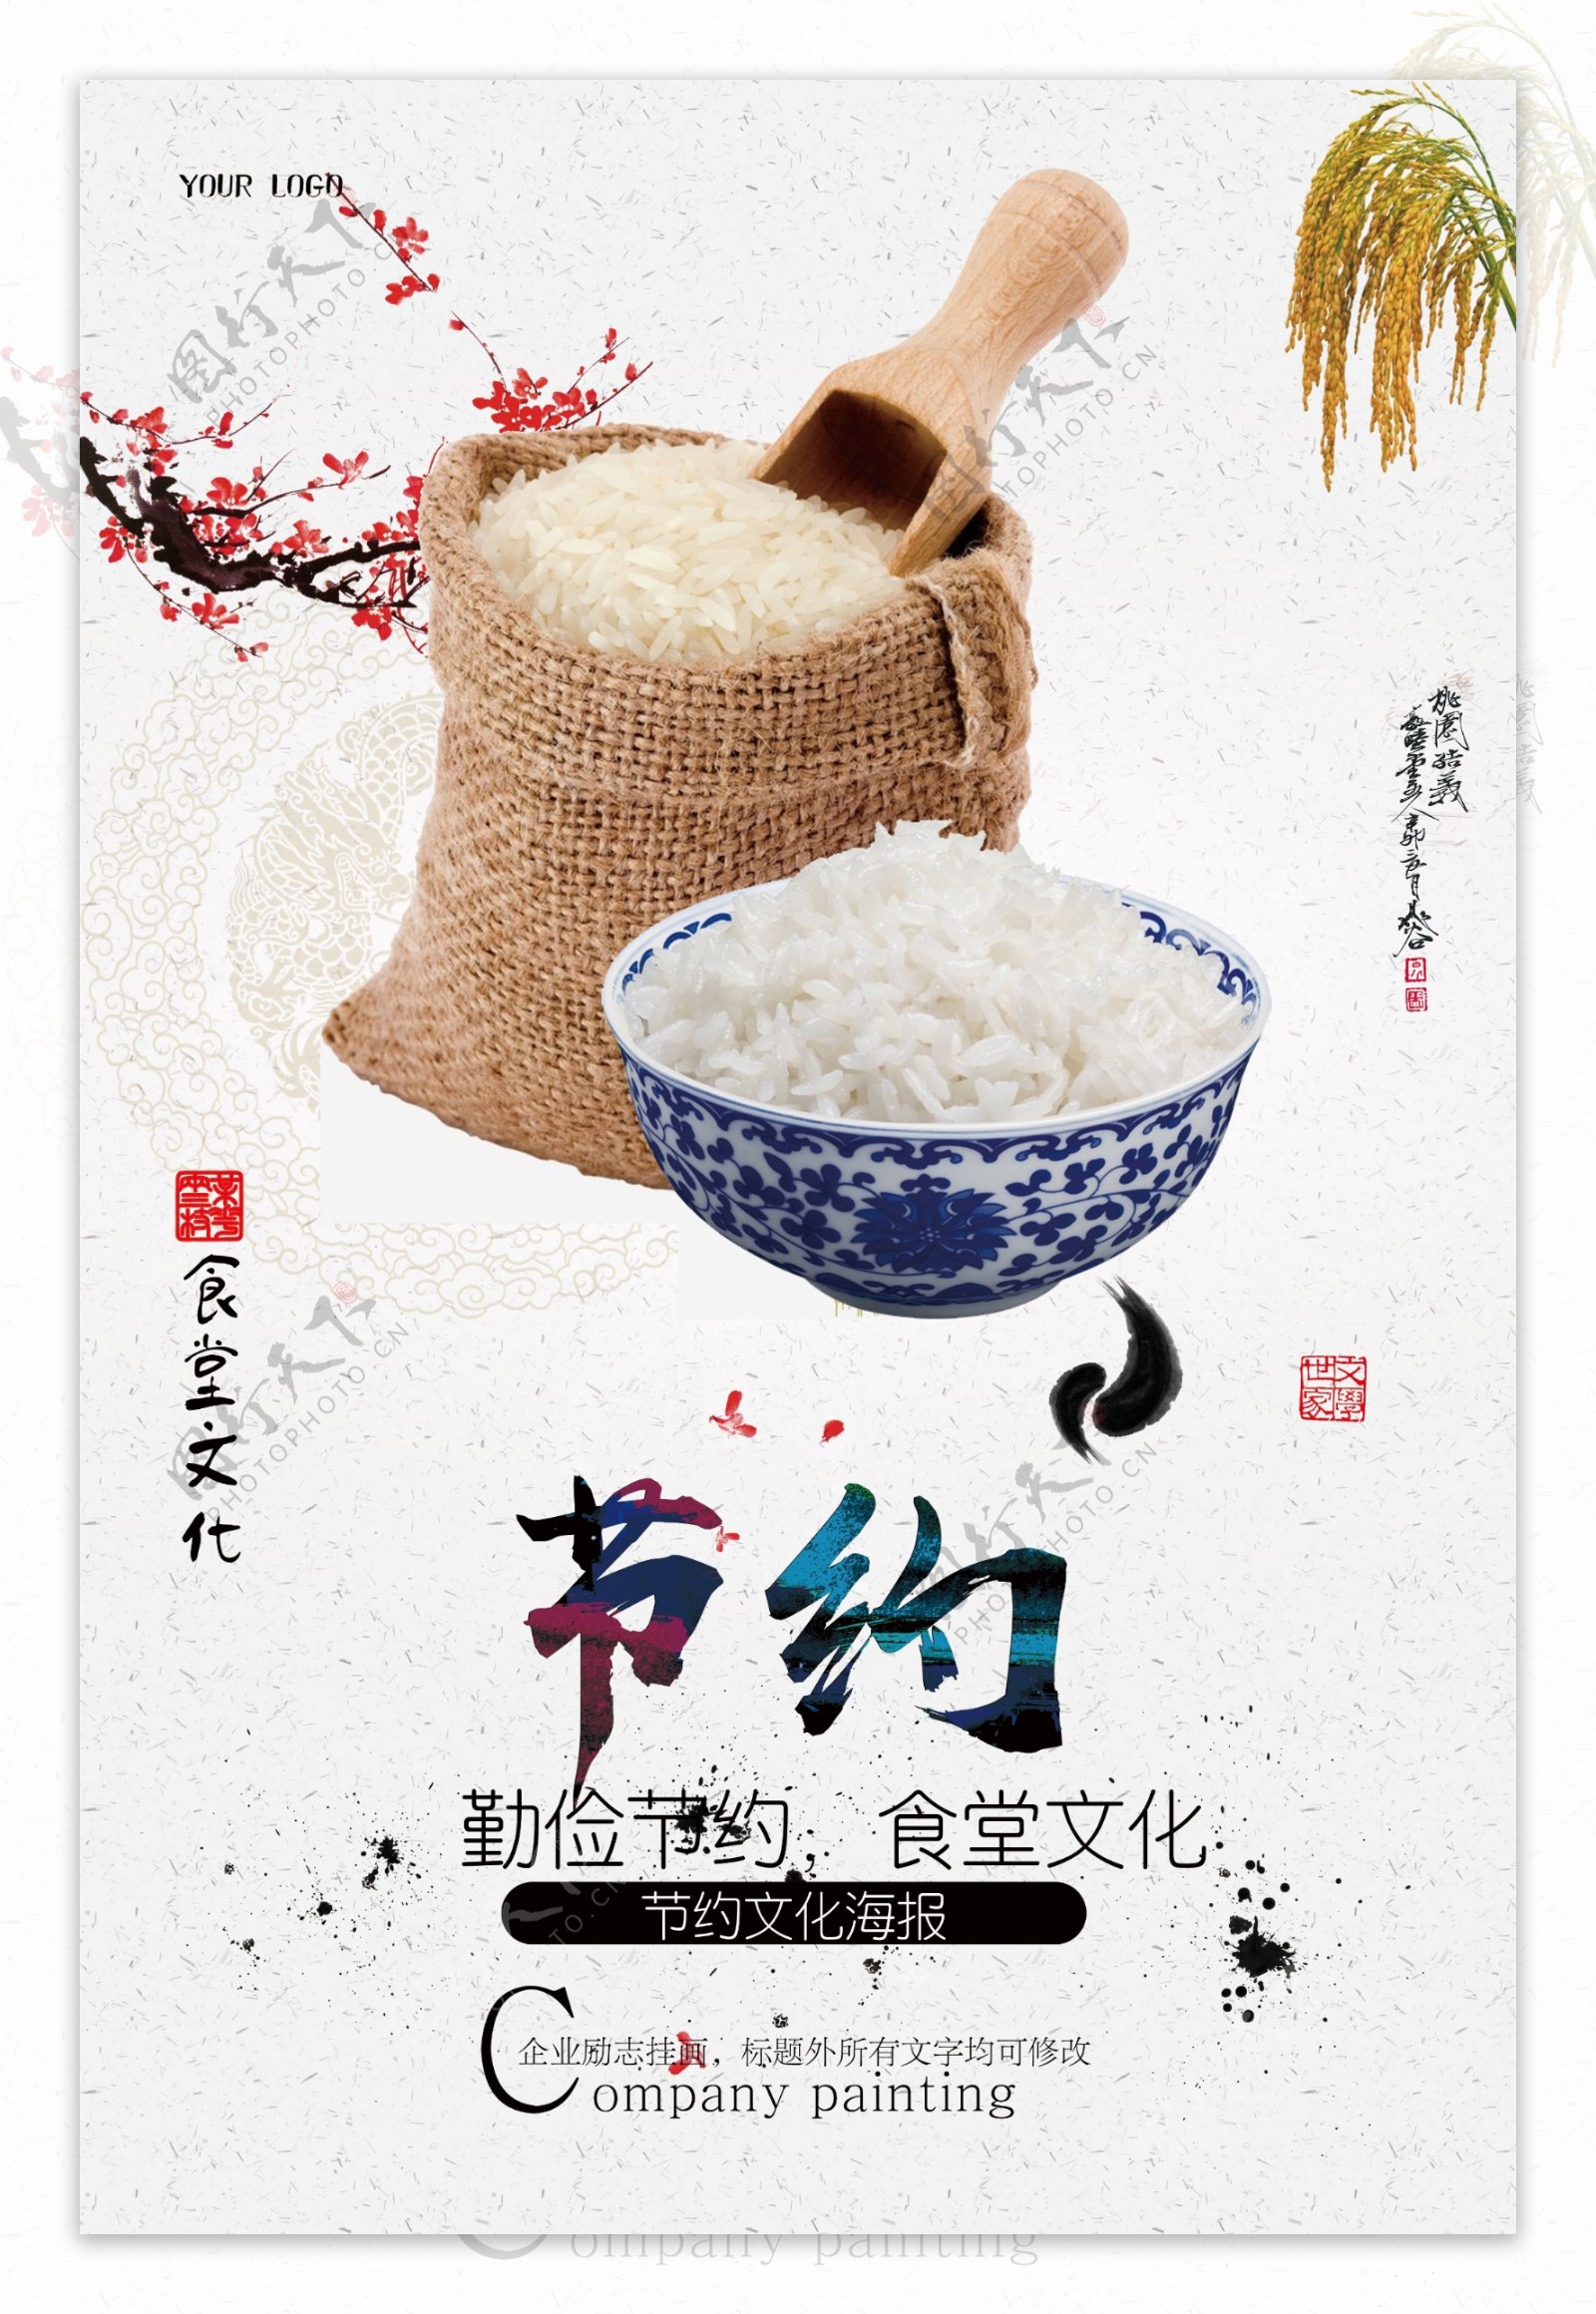 中国风食堂节约文化海报下载